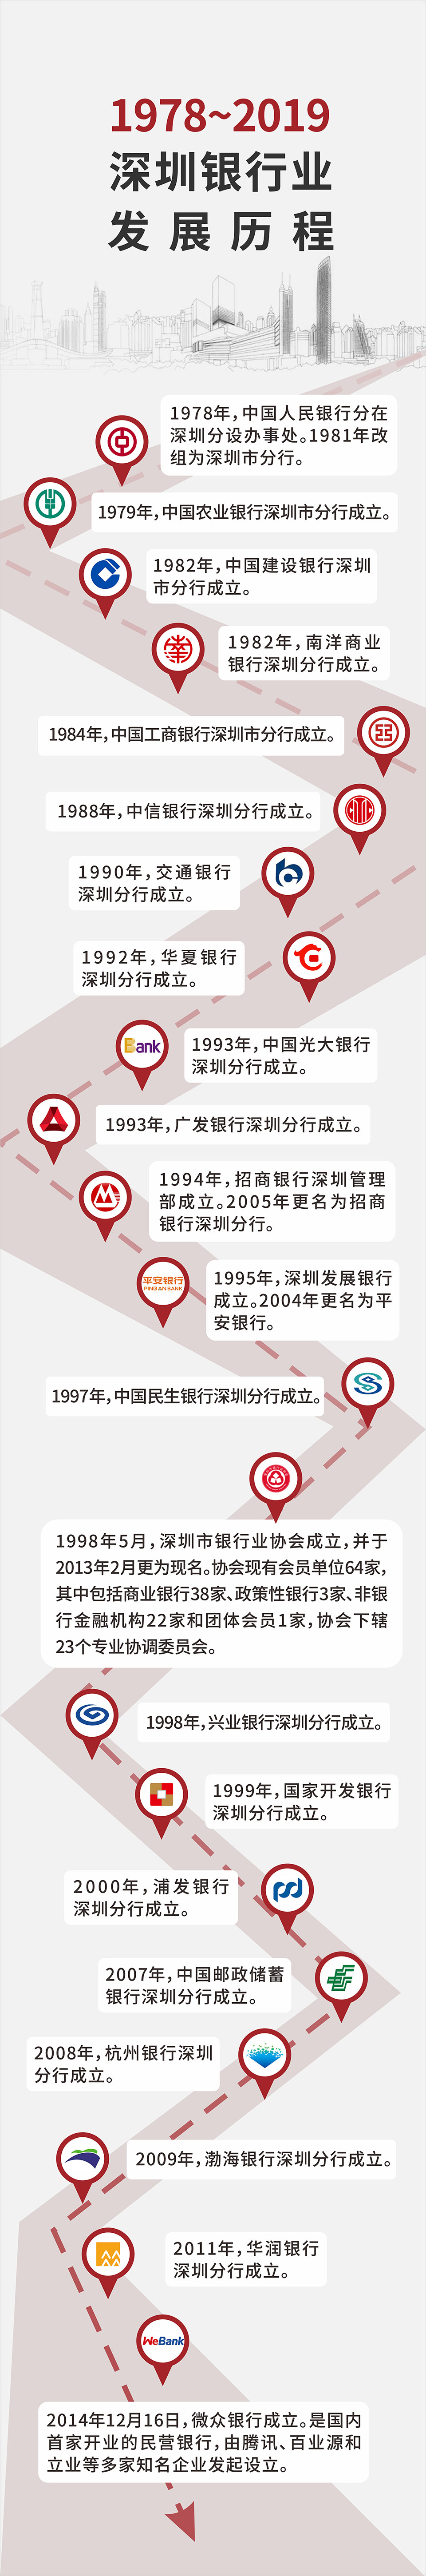 图说 1978-2019深圳银行业发展历程